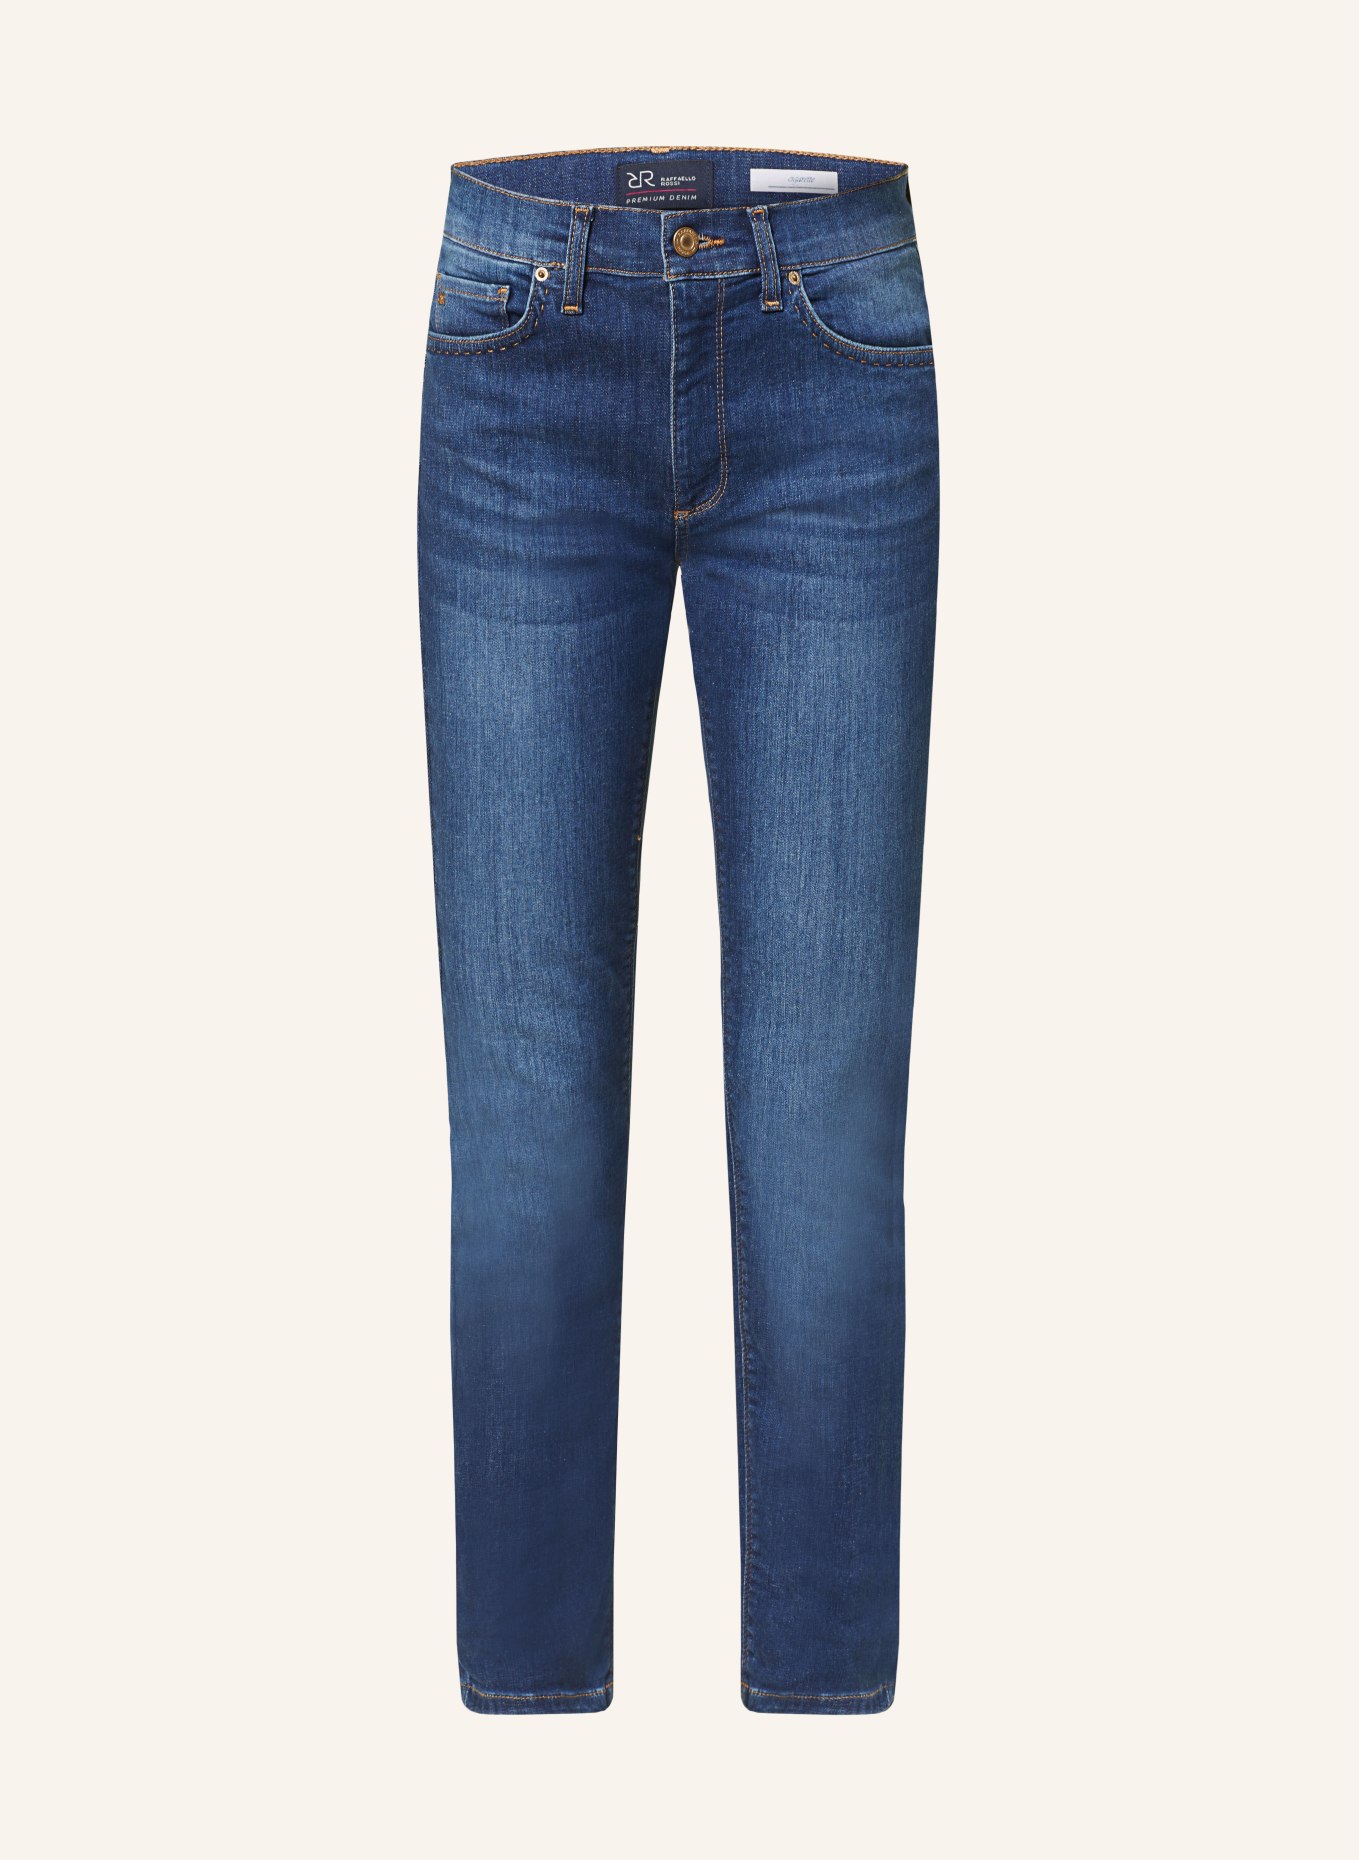 RAFFAELLO ROSSI 7/8 jeans SUZY, Color: 847 jeansblue (Image 1)